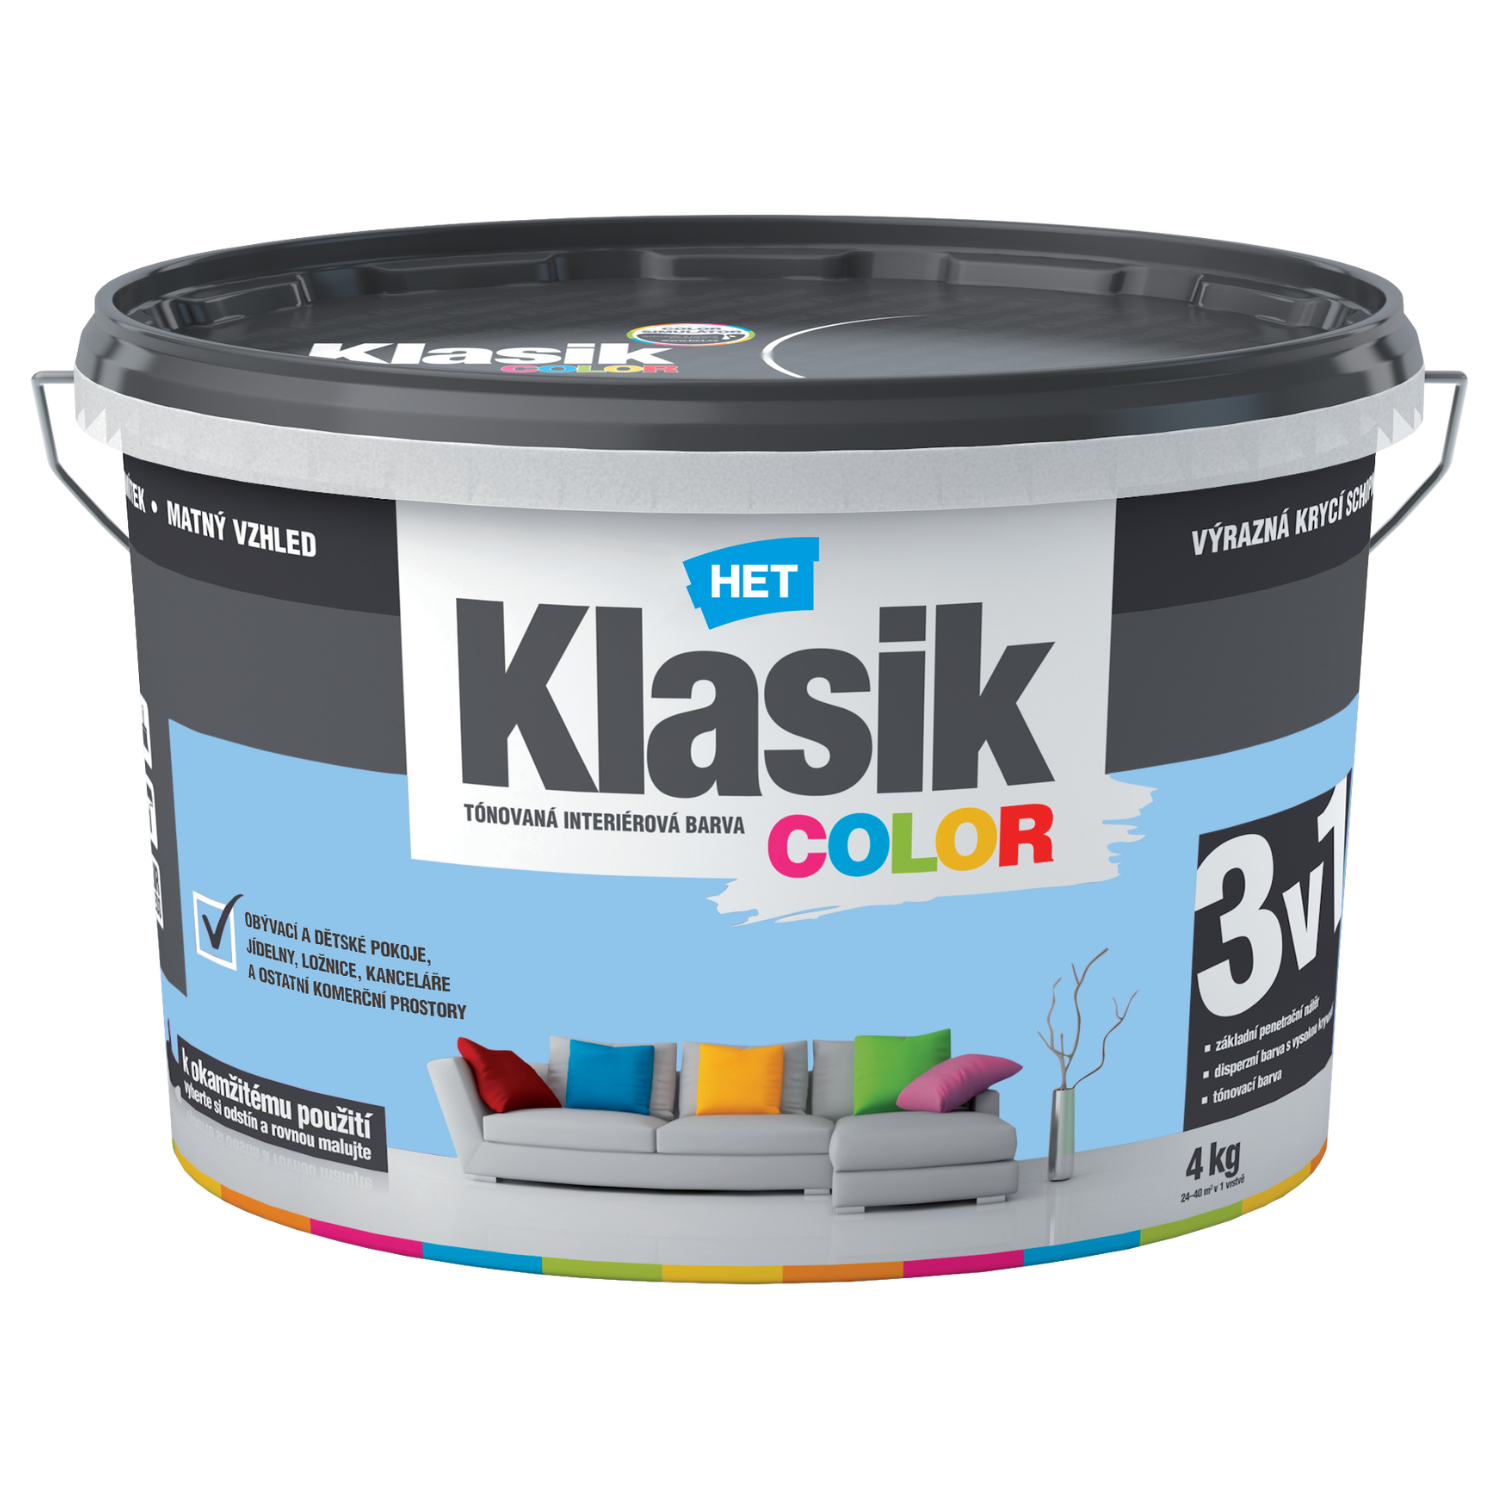 HET Klasik COLOR tónovaná interiérová akrylátová disperzná oteruvzdorná farba 4 kg, KC0407 - modrý blankytný